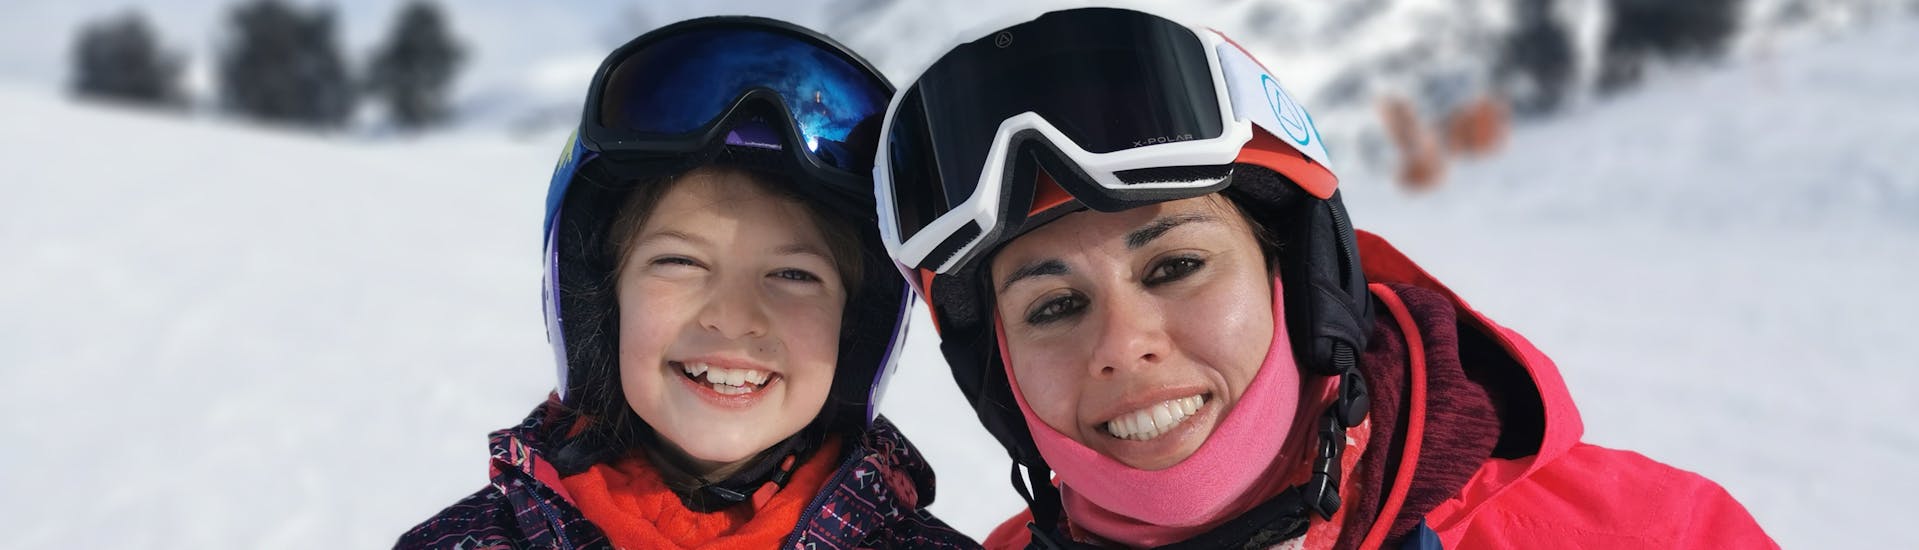 Lezioni di Snowboard a partire da 4 anni per tutti i livelli con Ski Life Escuela de Esquí Baqueira.